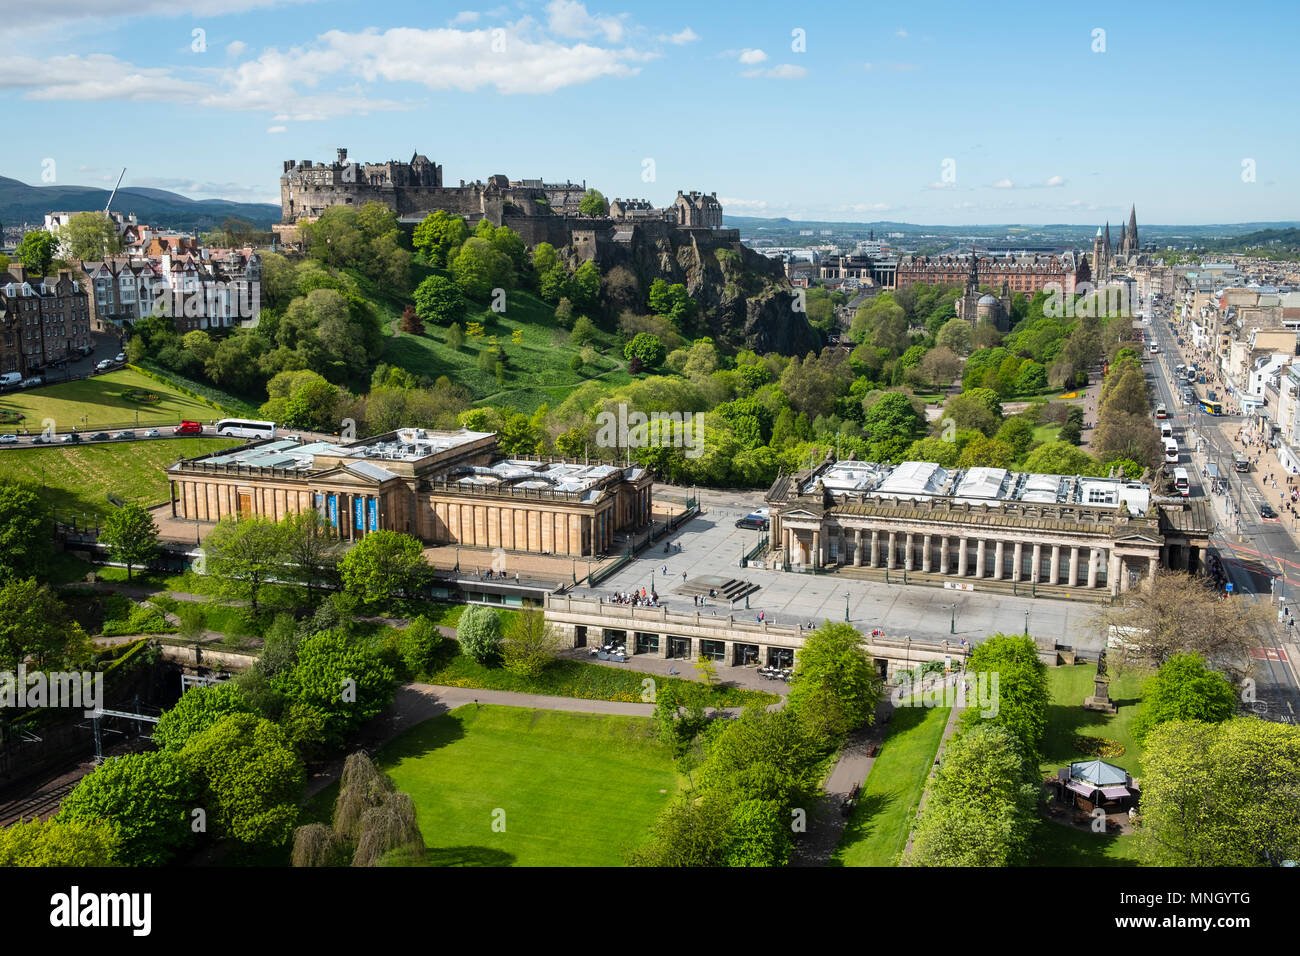 Skyline von Princes Street Gardens und Edinburgh Castle, die Scottish National Gallery (L) und der Royal Scottish Academy (R) in Edinburgh, Schottland, Großbritannien Stockfoto